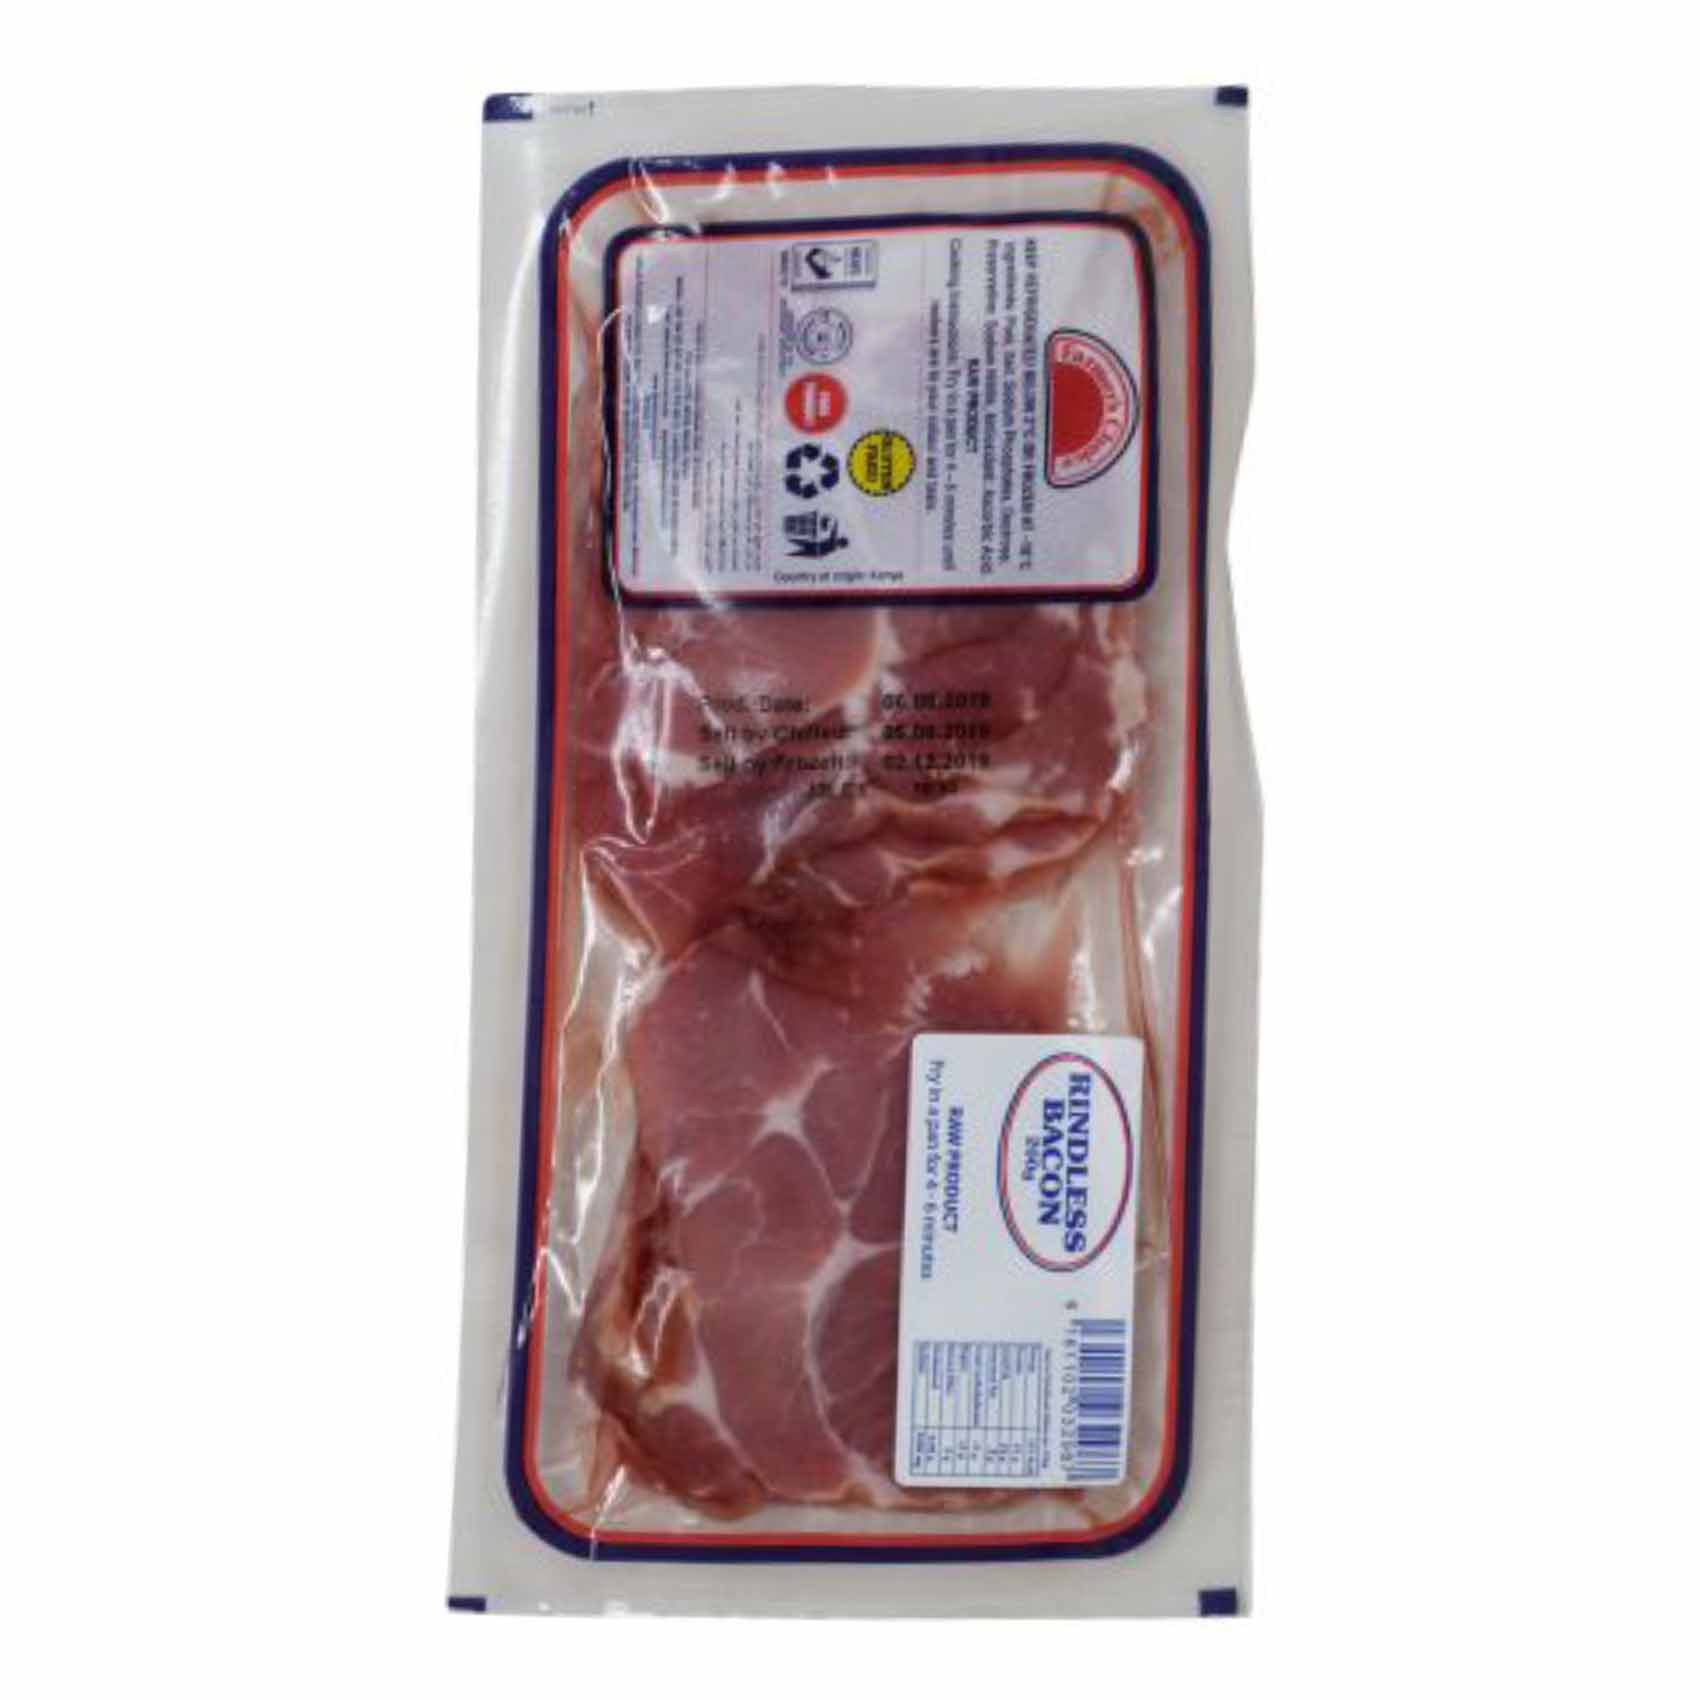 Farmers Choice Rindless Bacon 200 gr